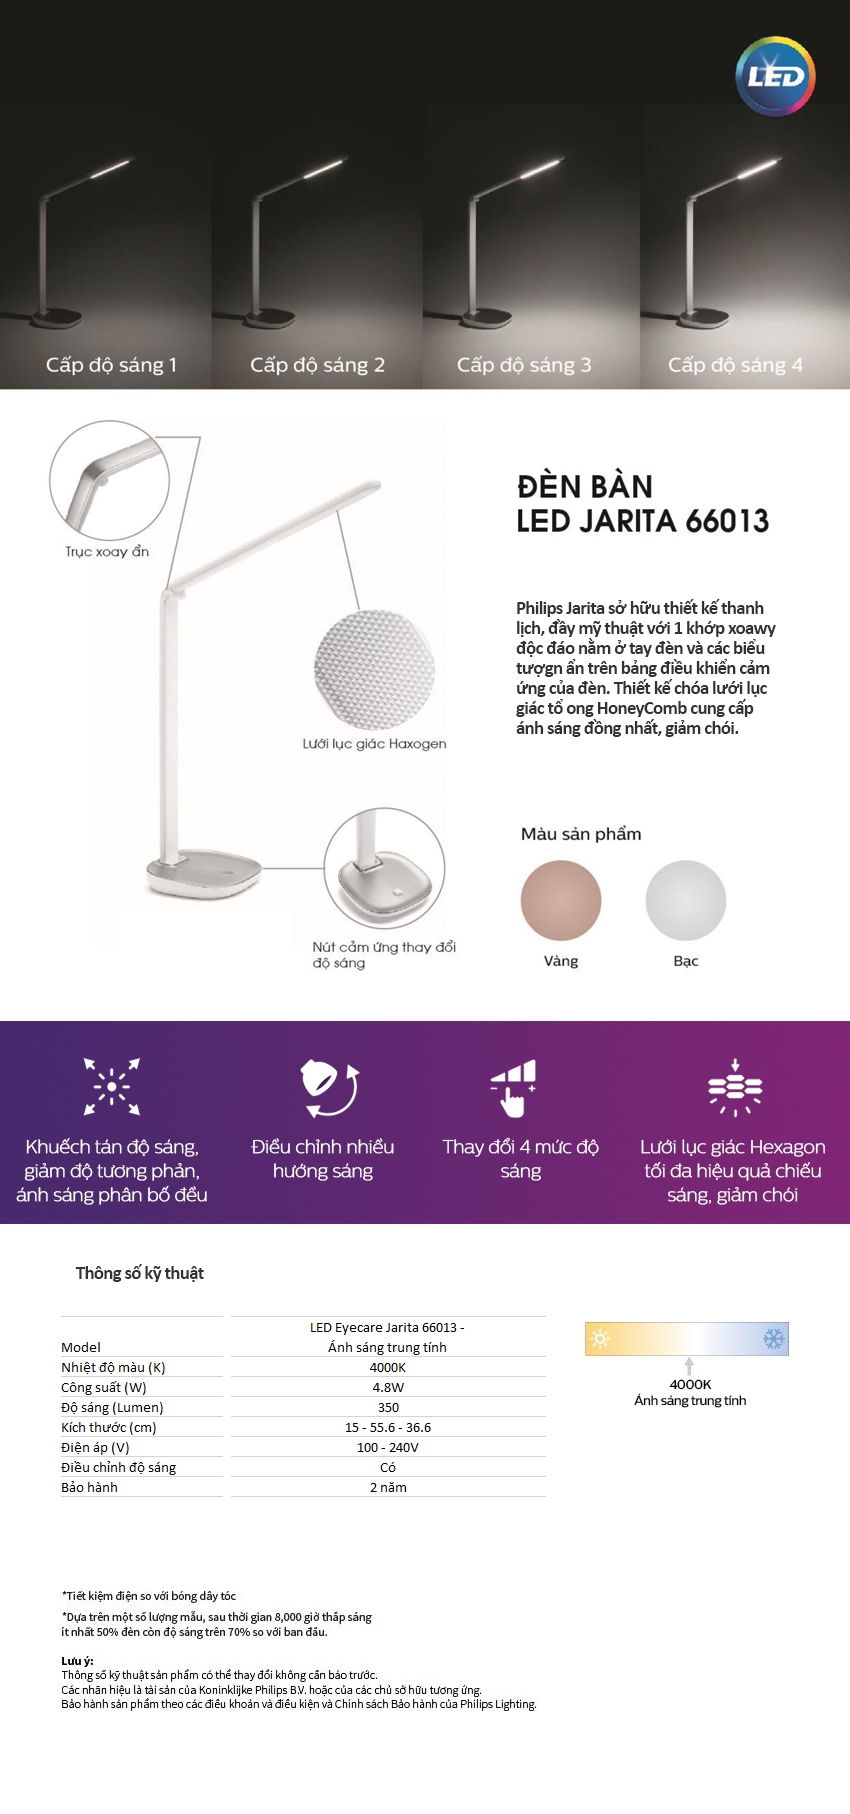 Đèn Bàn Philips LED Jarita 66013